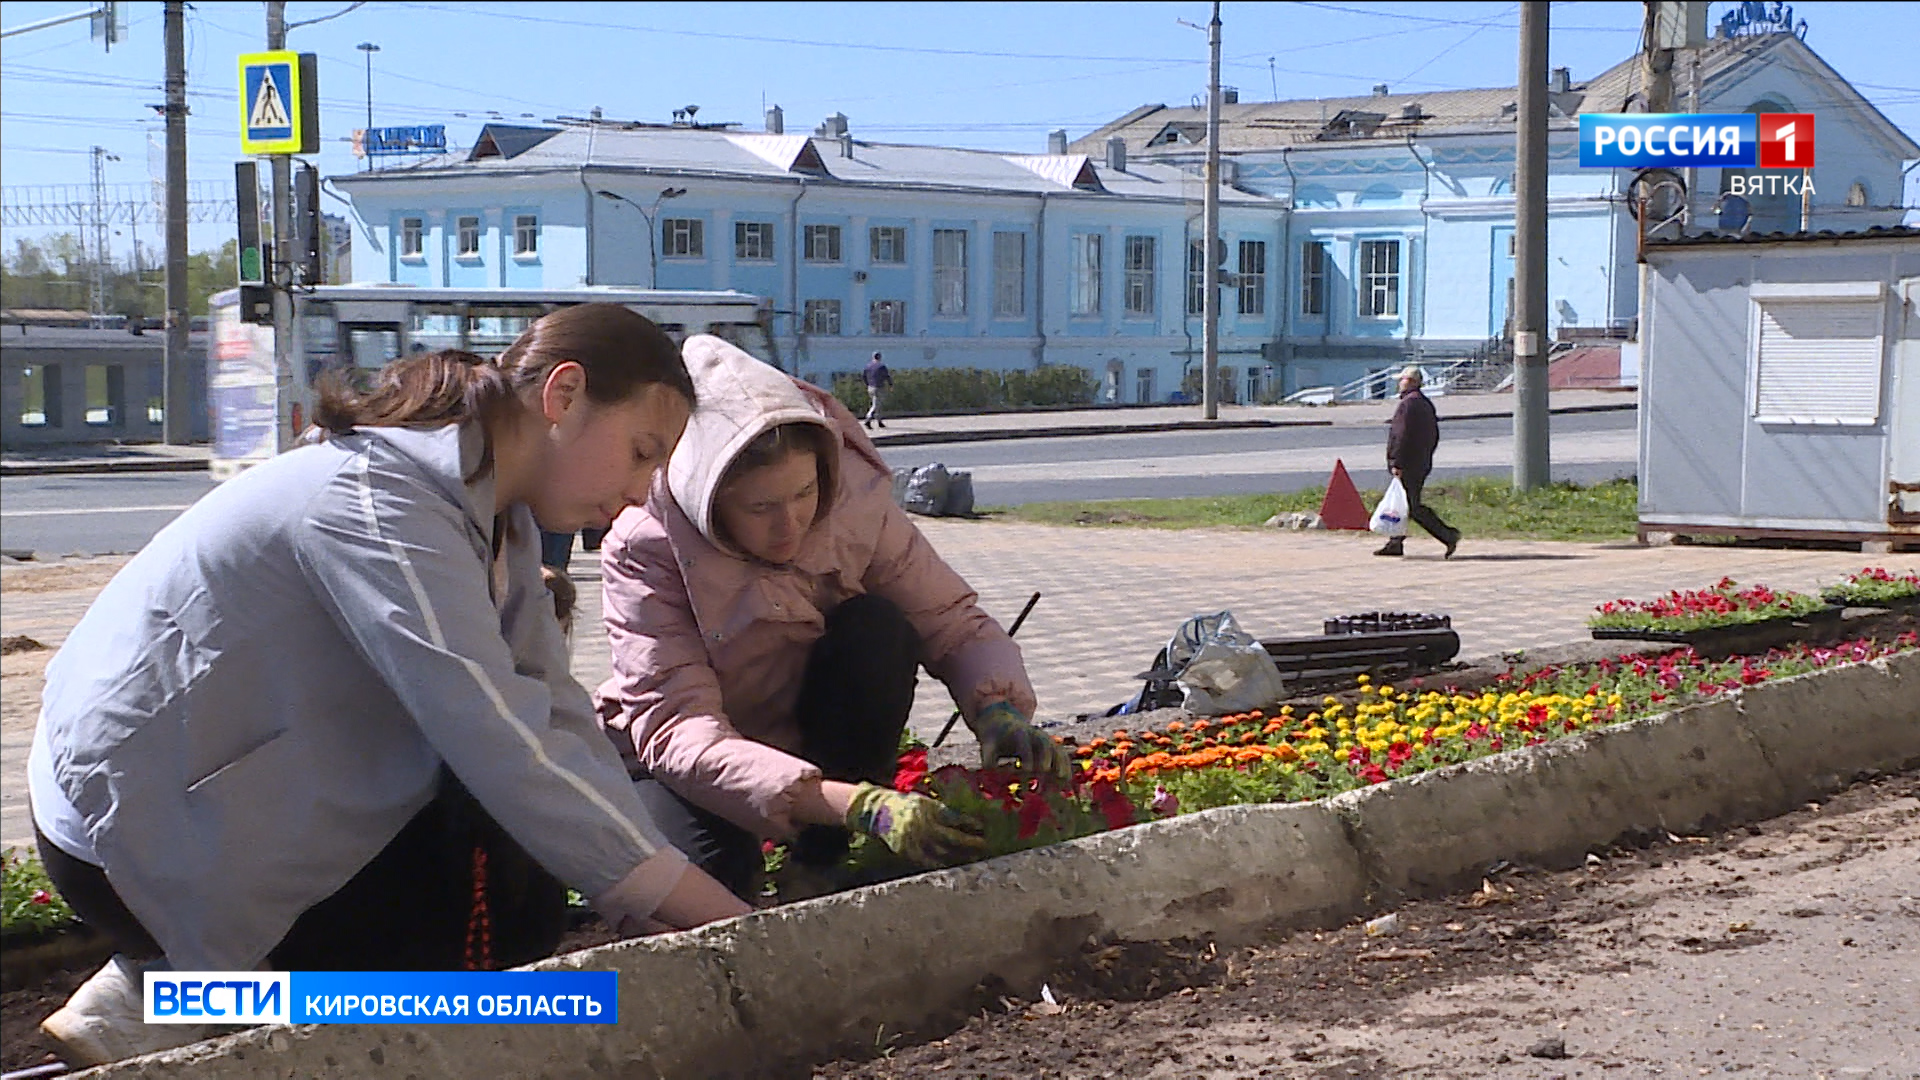 В Кирове к юбилею города появятся клумбы в дымковском стиле